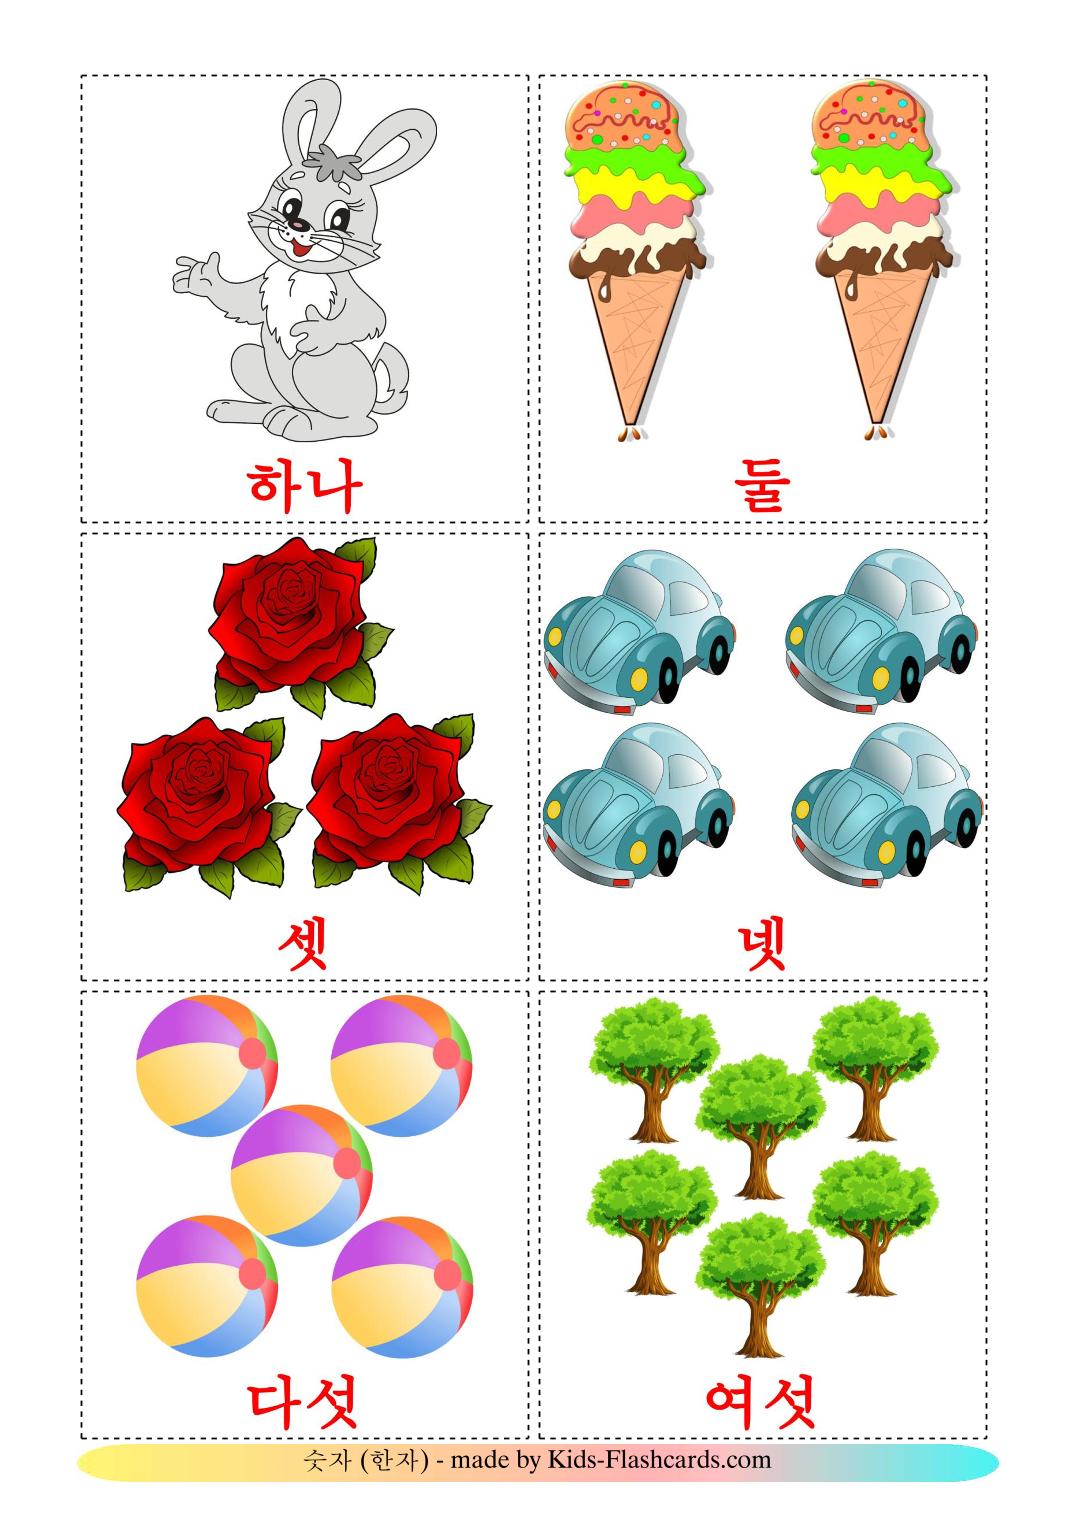 Contando - 10 Flashcards coreanoes gratuitos para impressão